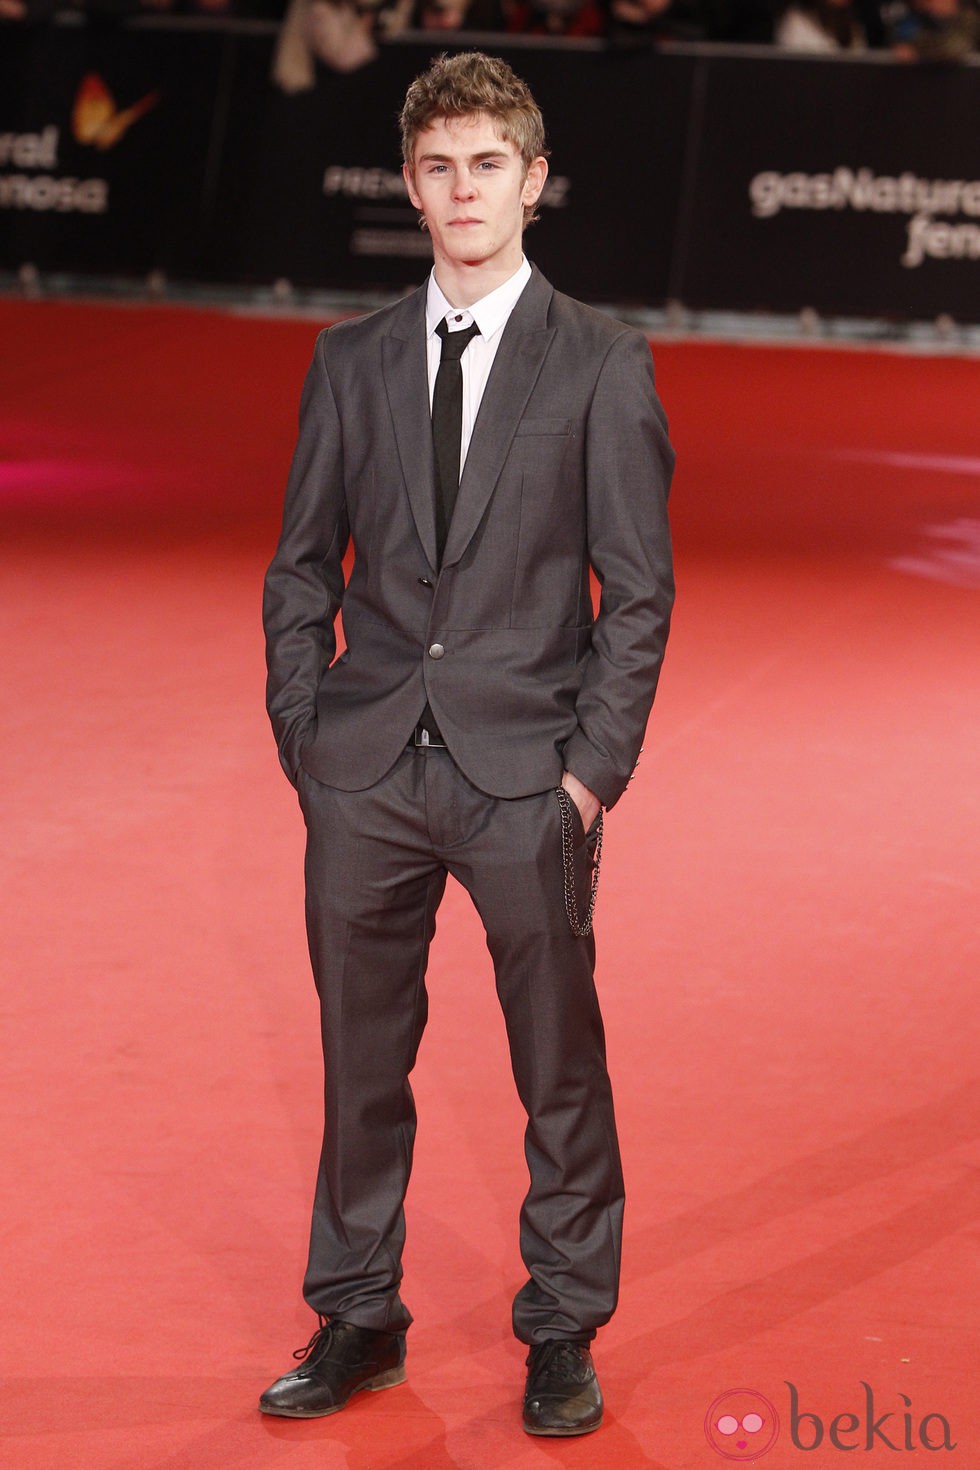 Patrick Criado en la alfombra roja de los Premios Feroz 2014